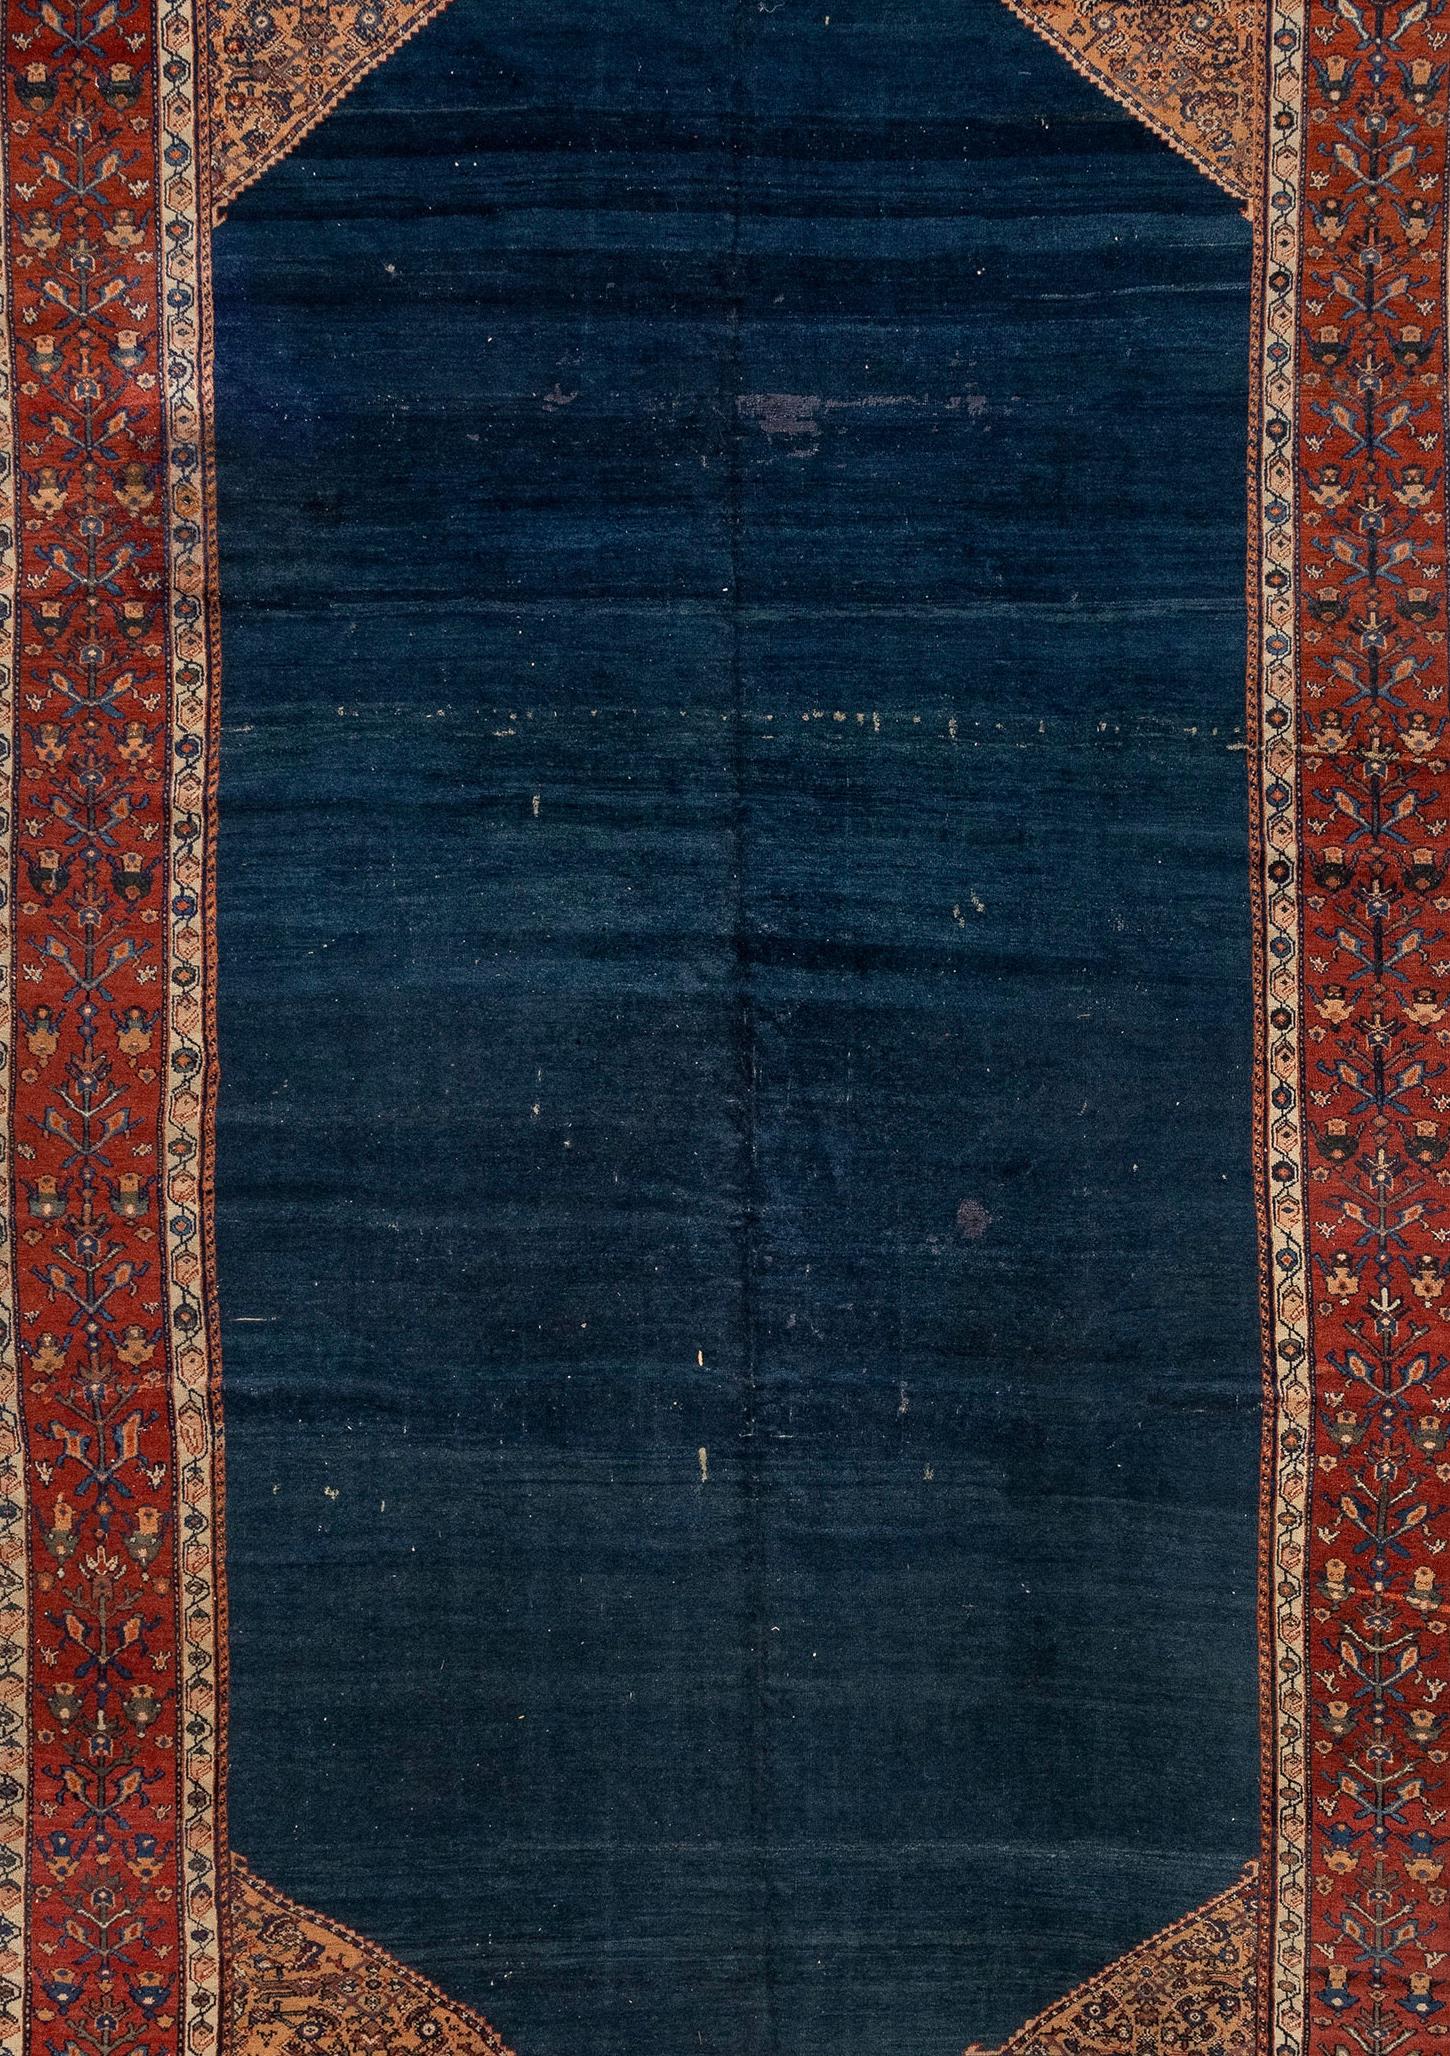 Le tapis Mahal est un tapis incroyablement vibrant et descriptif, qui frôle presque le sujet d'une forme d'art. Une belle addition à toute forme qui présente une approche et une esthétique uniques parmi les nombreuses formes de tapis orientaux et